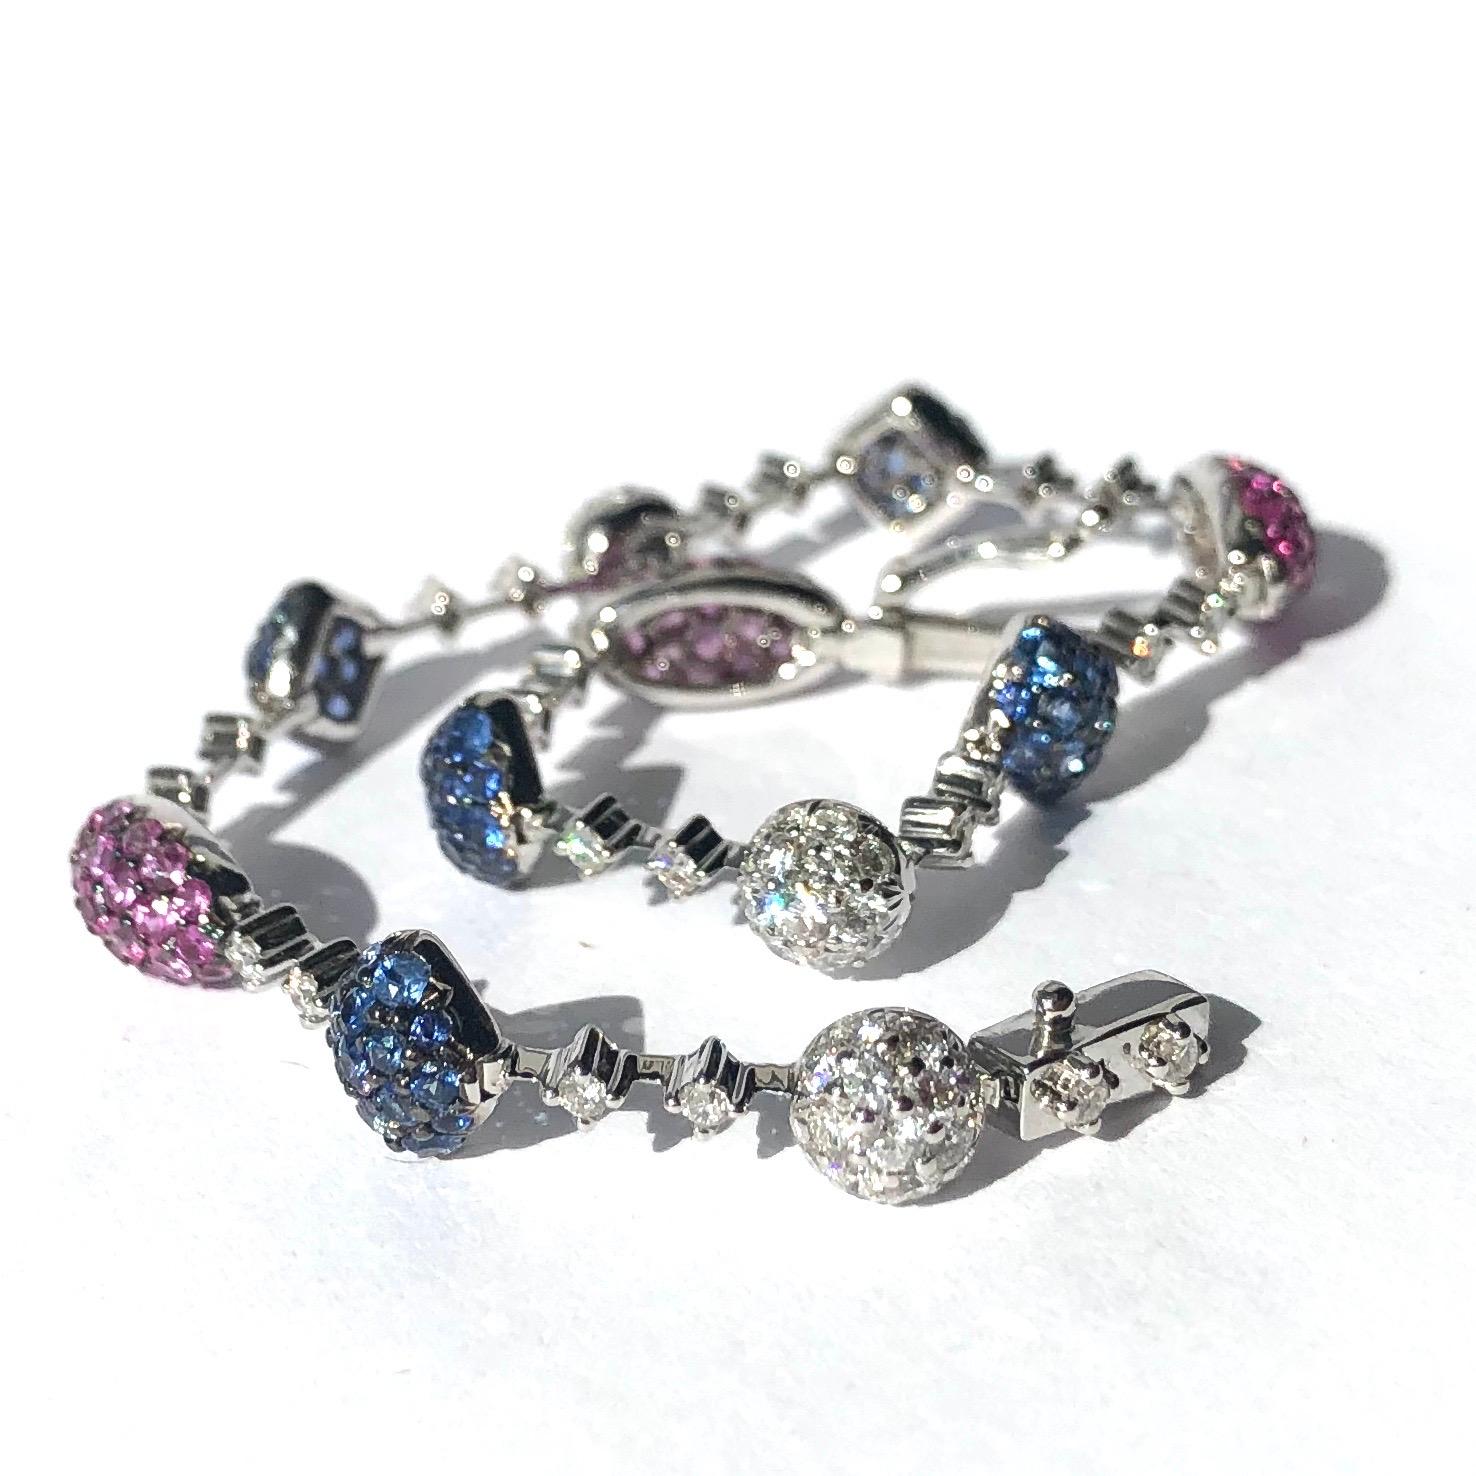 Ce bracelet spectaculaire est orné de rubis d'un rose profond, de saphirs bleus et de diamants brillants. Les rubis sont sertis dans des panneaux ovales incurvés qui sont reliés par un lien qui contient également deux diamants ainsi que le fermoir.